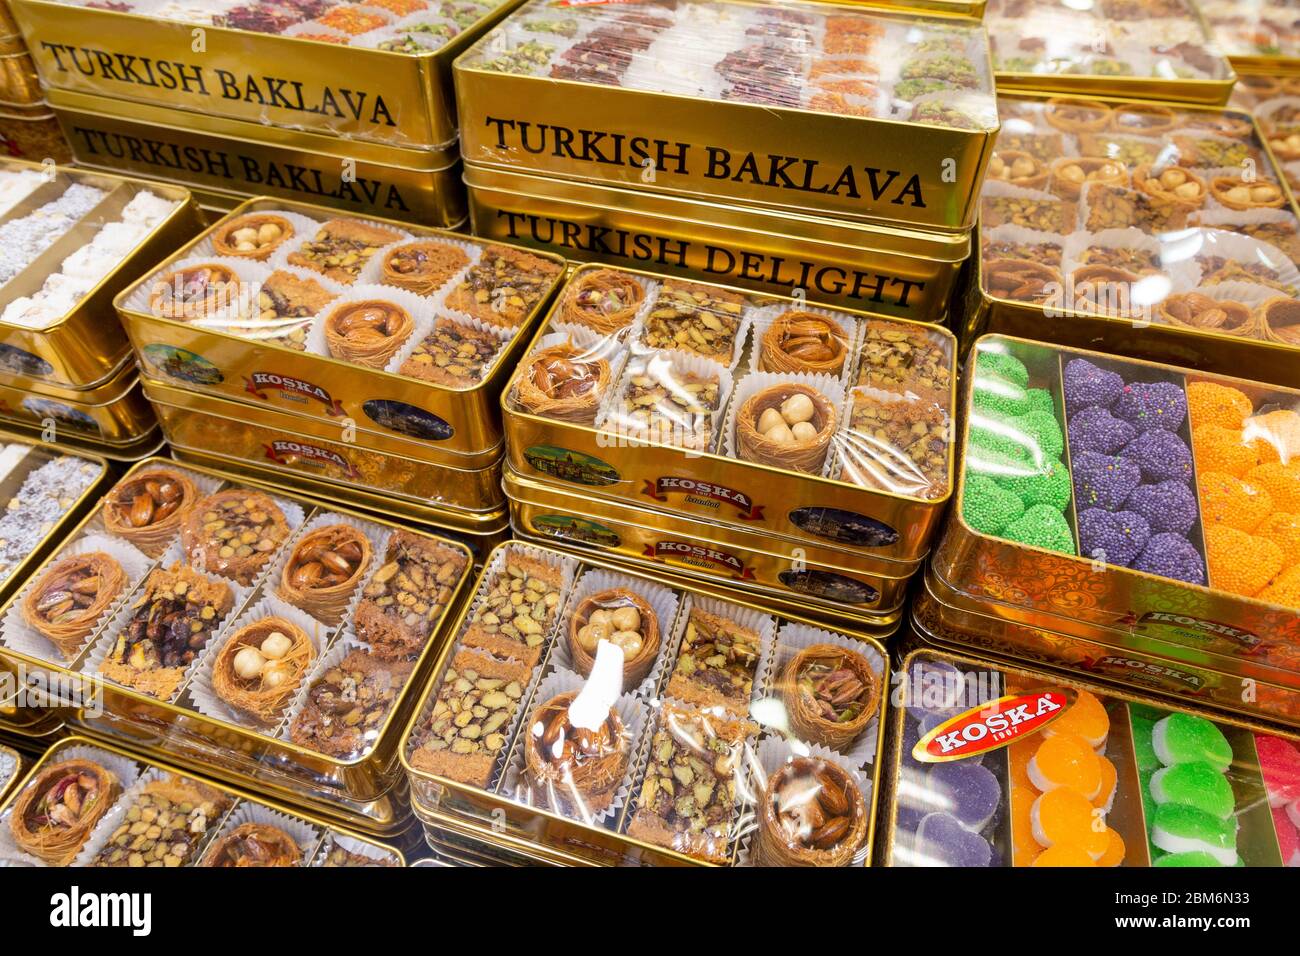 Beklava und ähnliche Süßigkeiten gehören im gesamten Nahen Osten zum traditionellen Gebäck, Istanbul, Türkei Banque D'Images